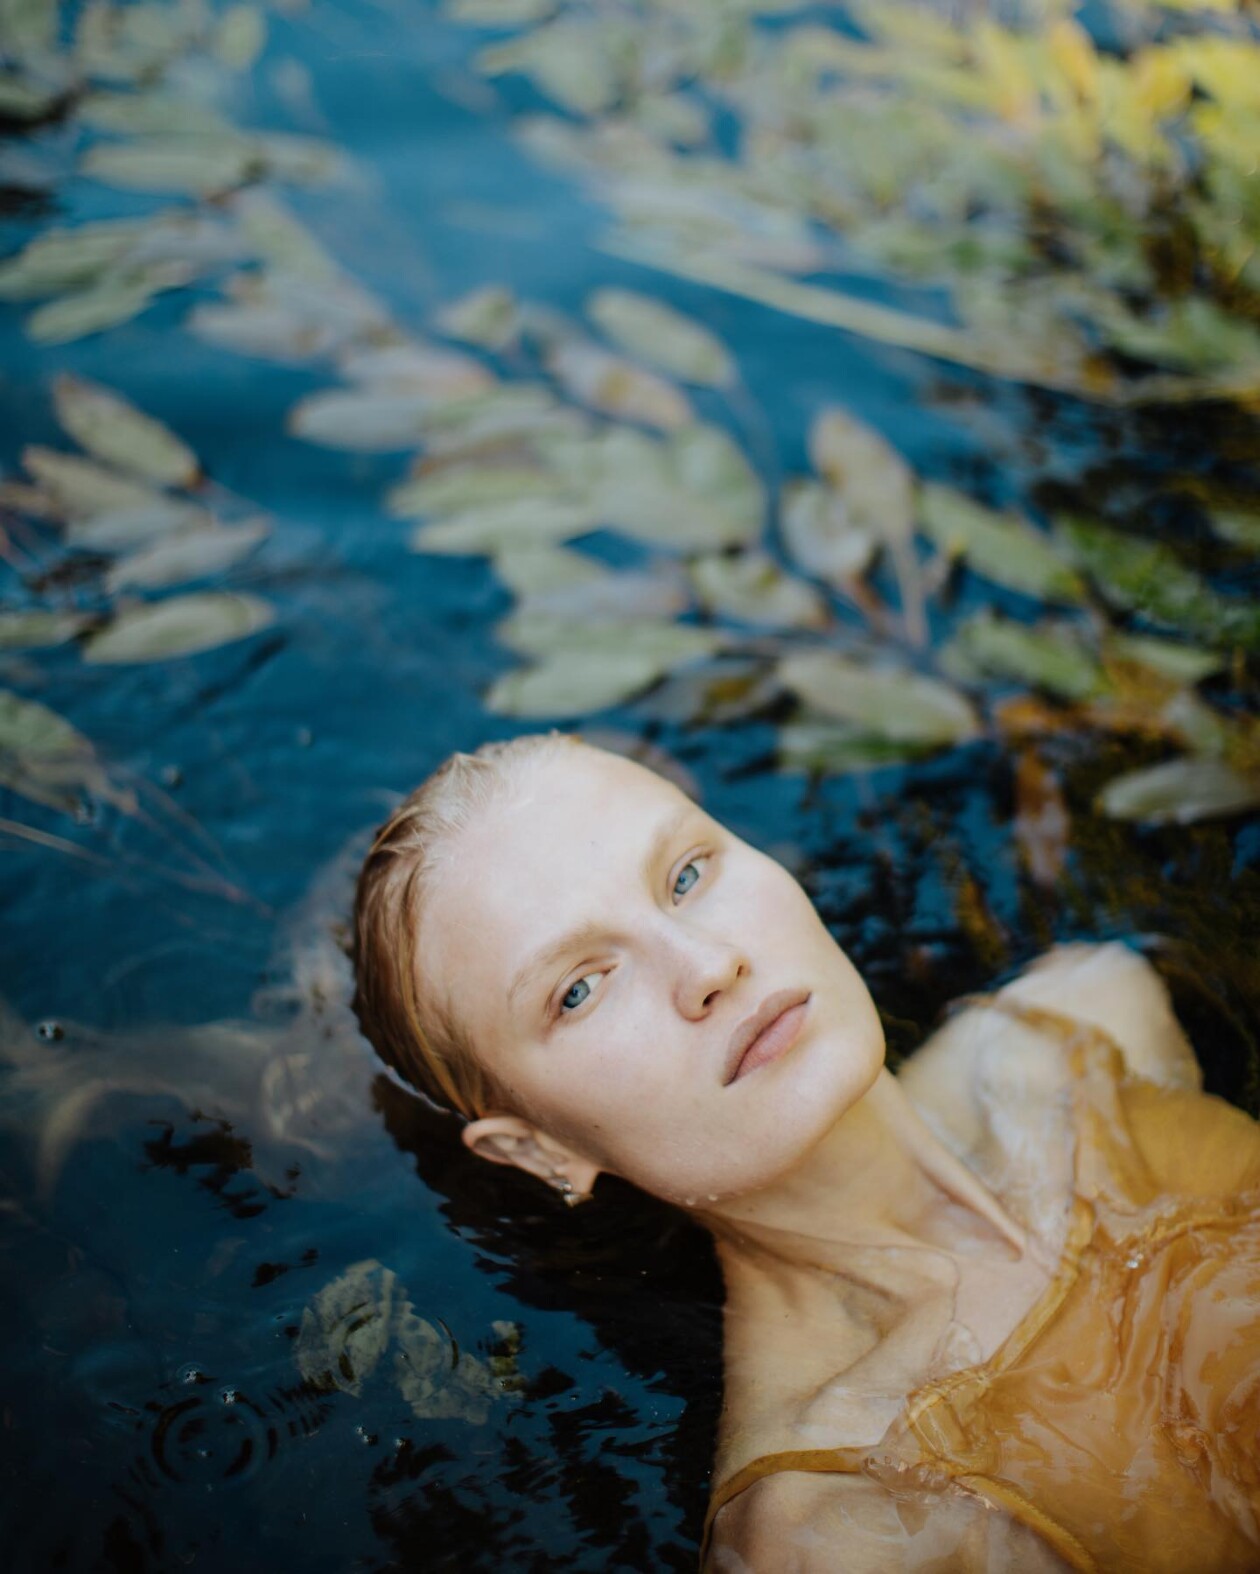 Ethereal Female Portraits By Xenie Zasetskaya (17)